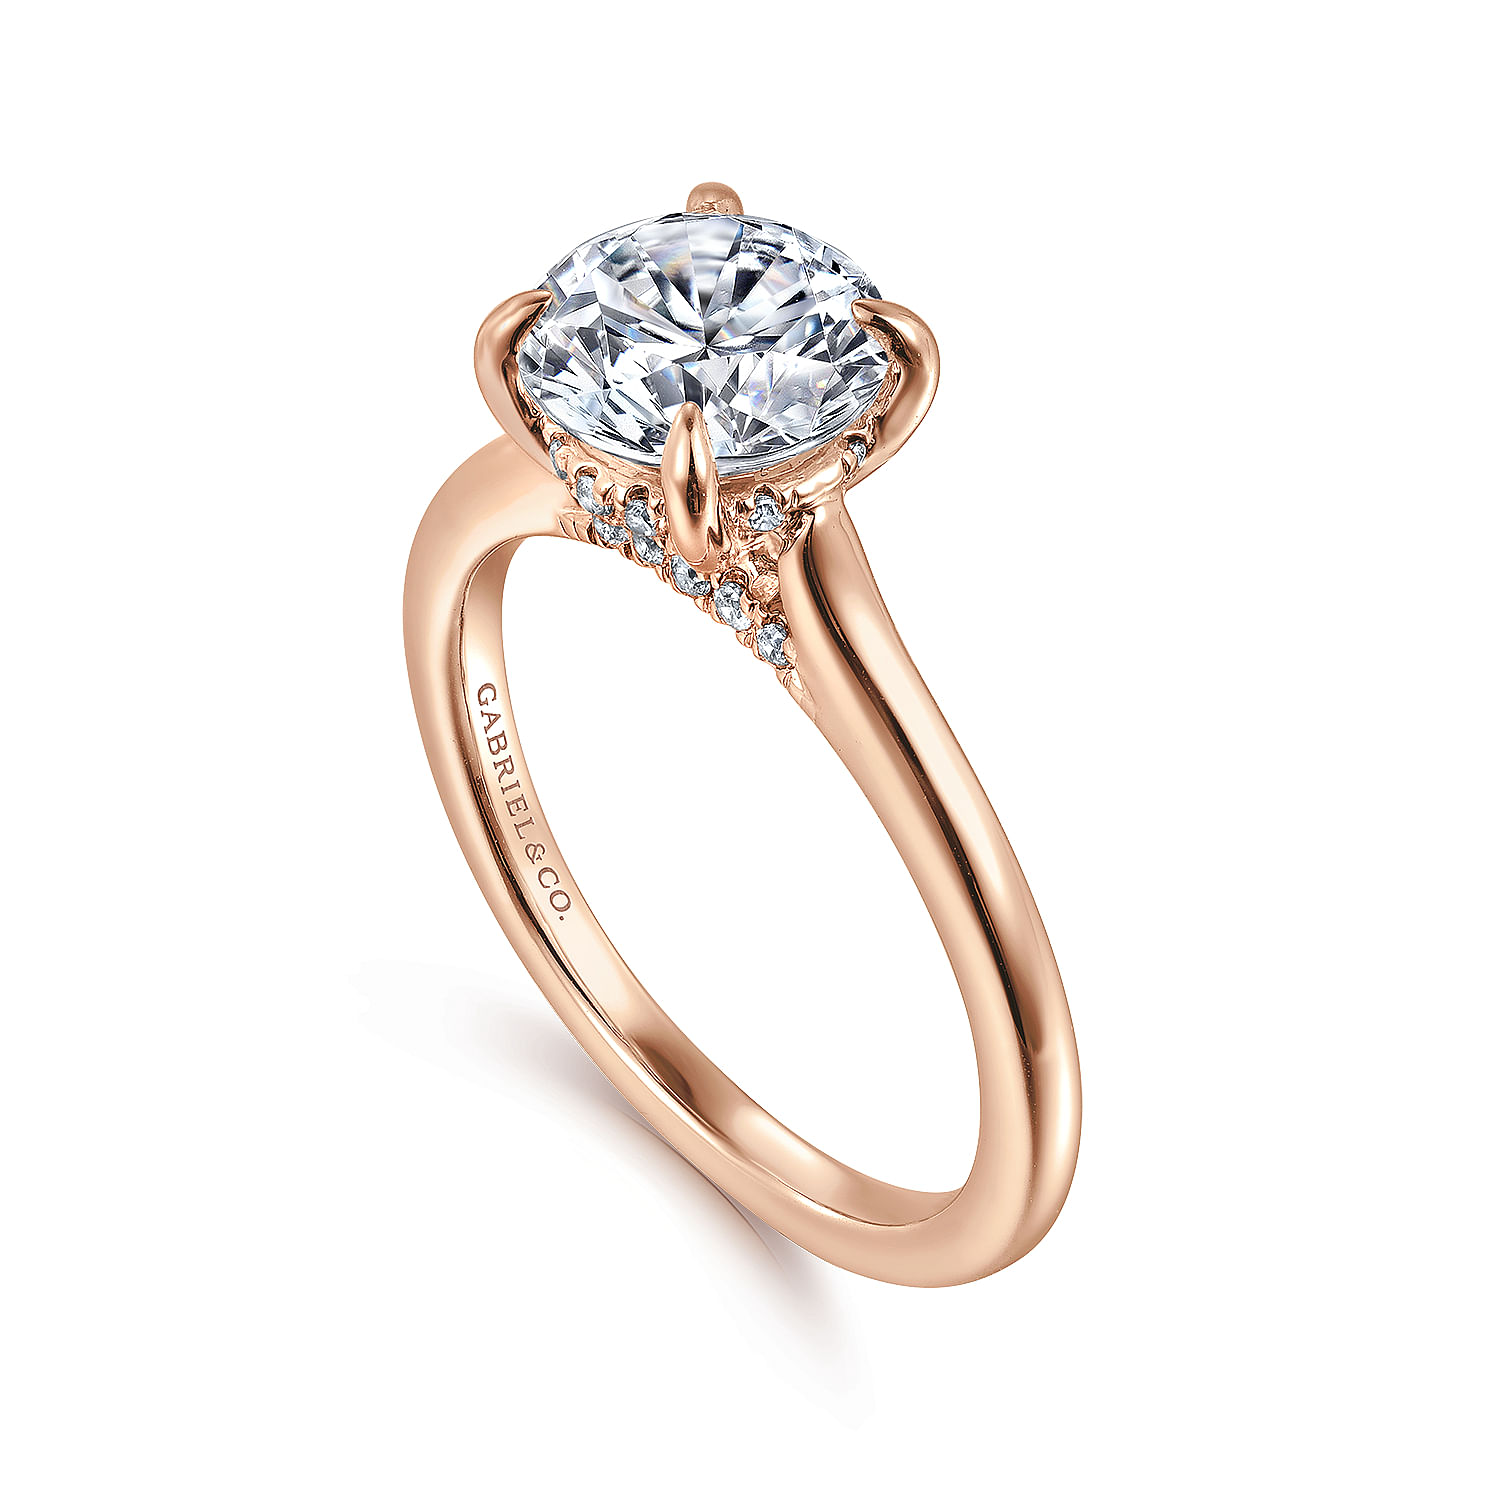 Ericka - 14K Rose Gold Round Diamond Engagement Ring - 0.11 ct - Shot 3